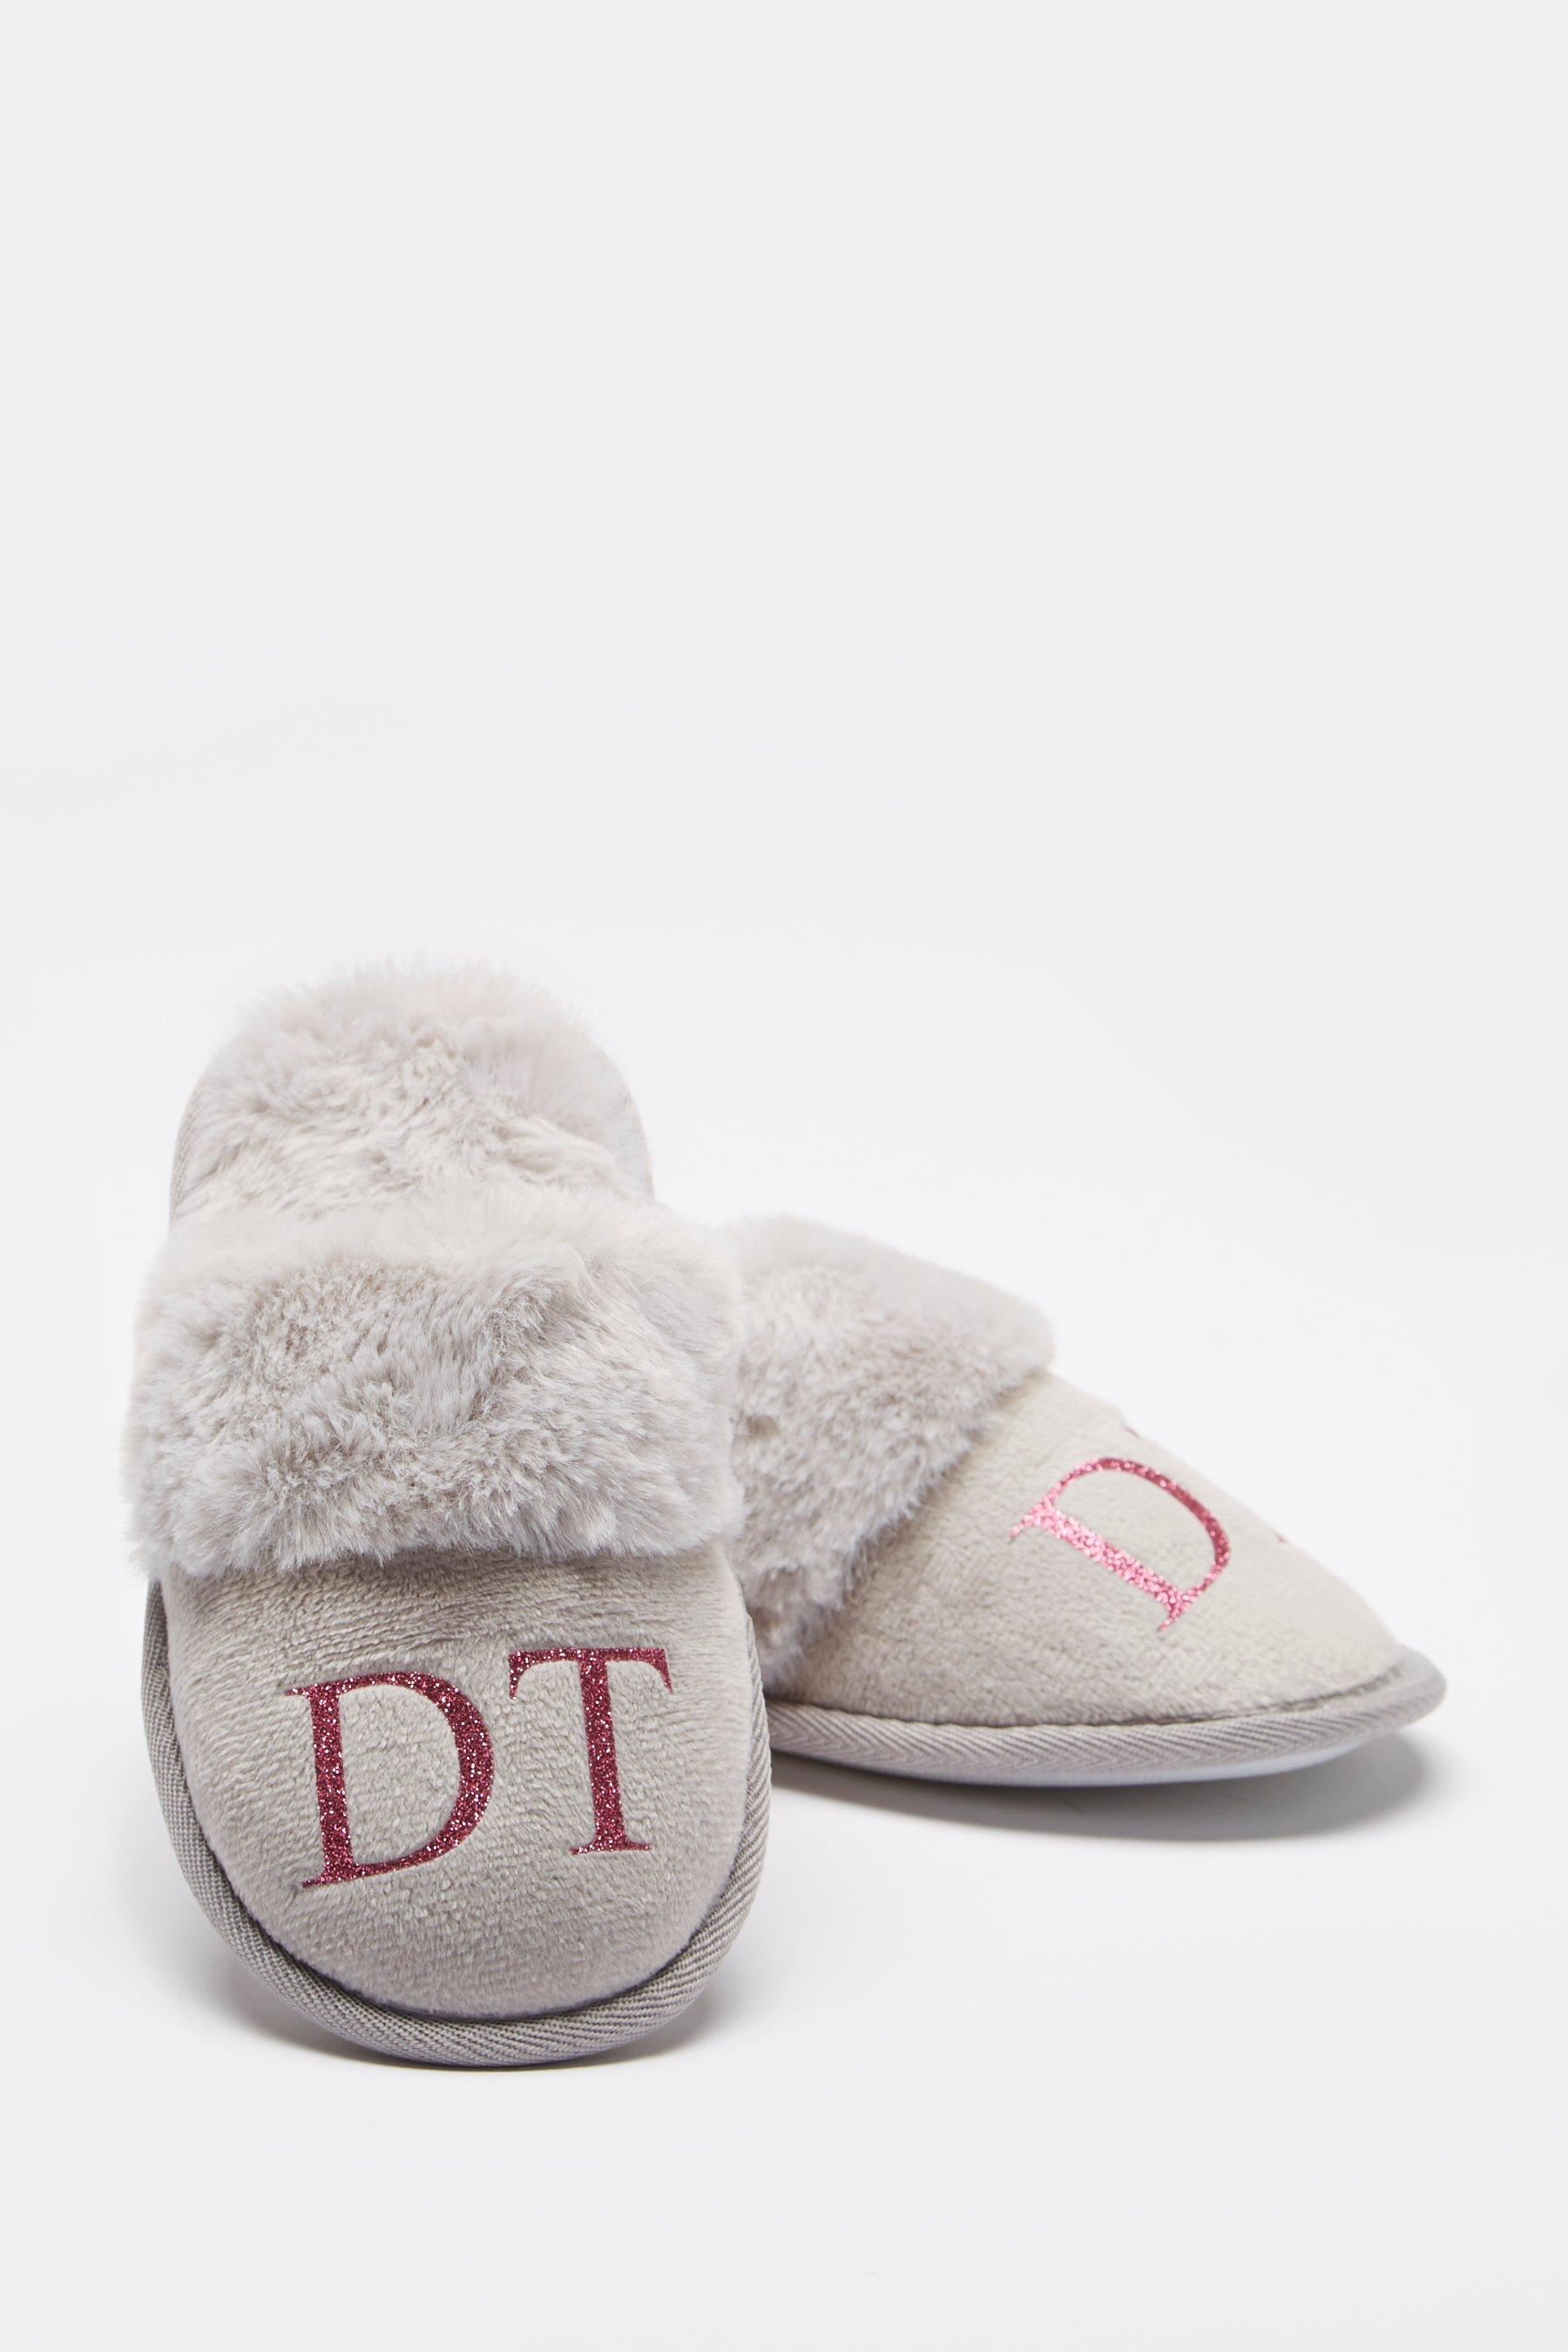 kids personalised slippers